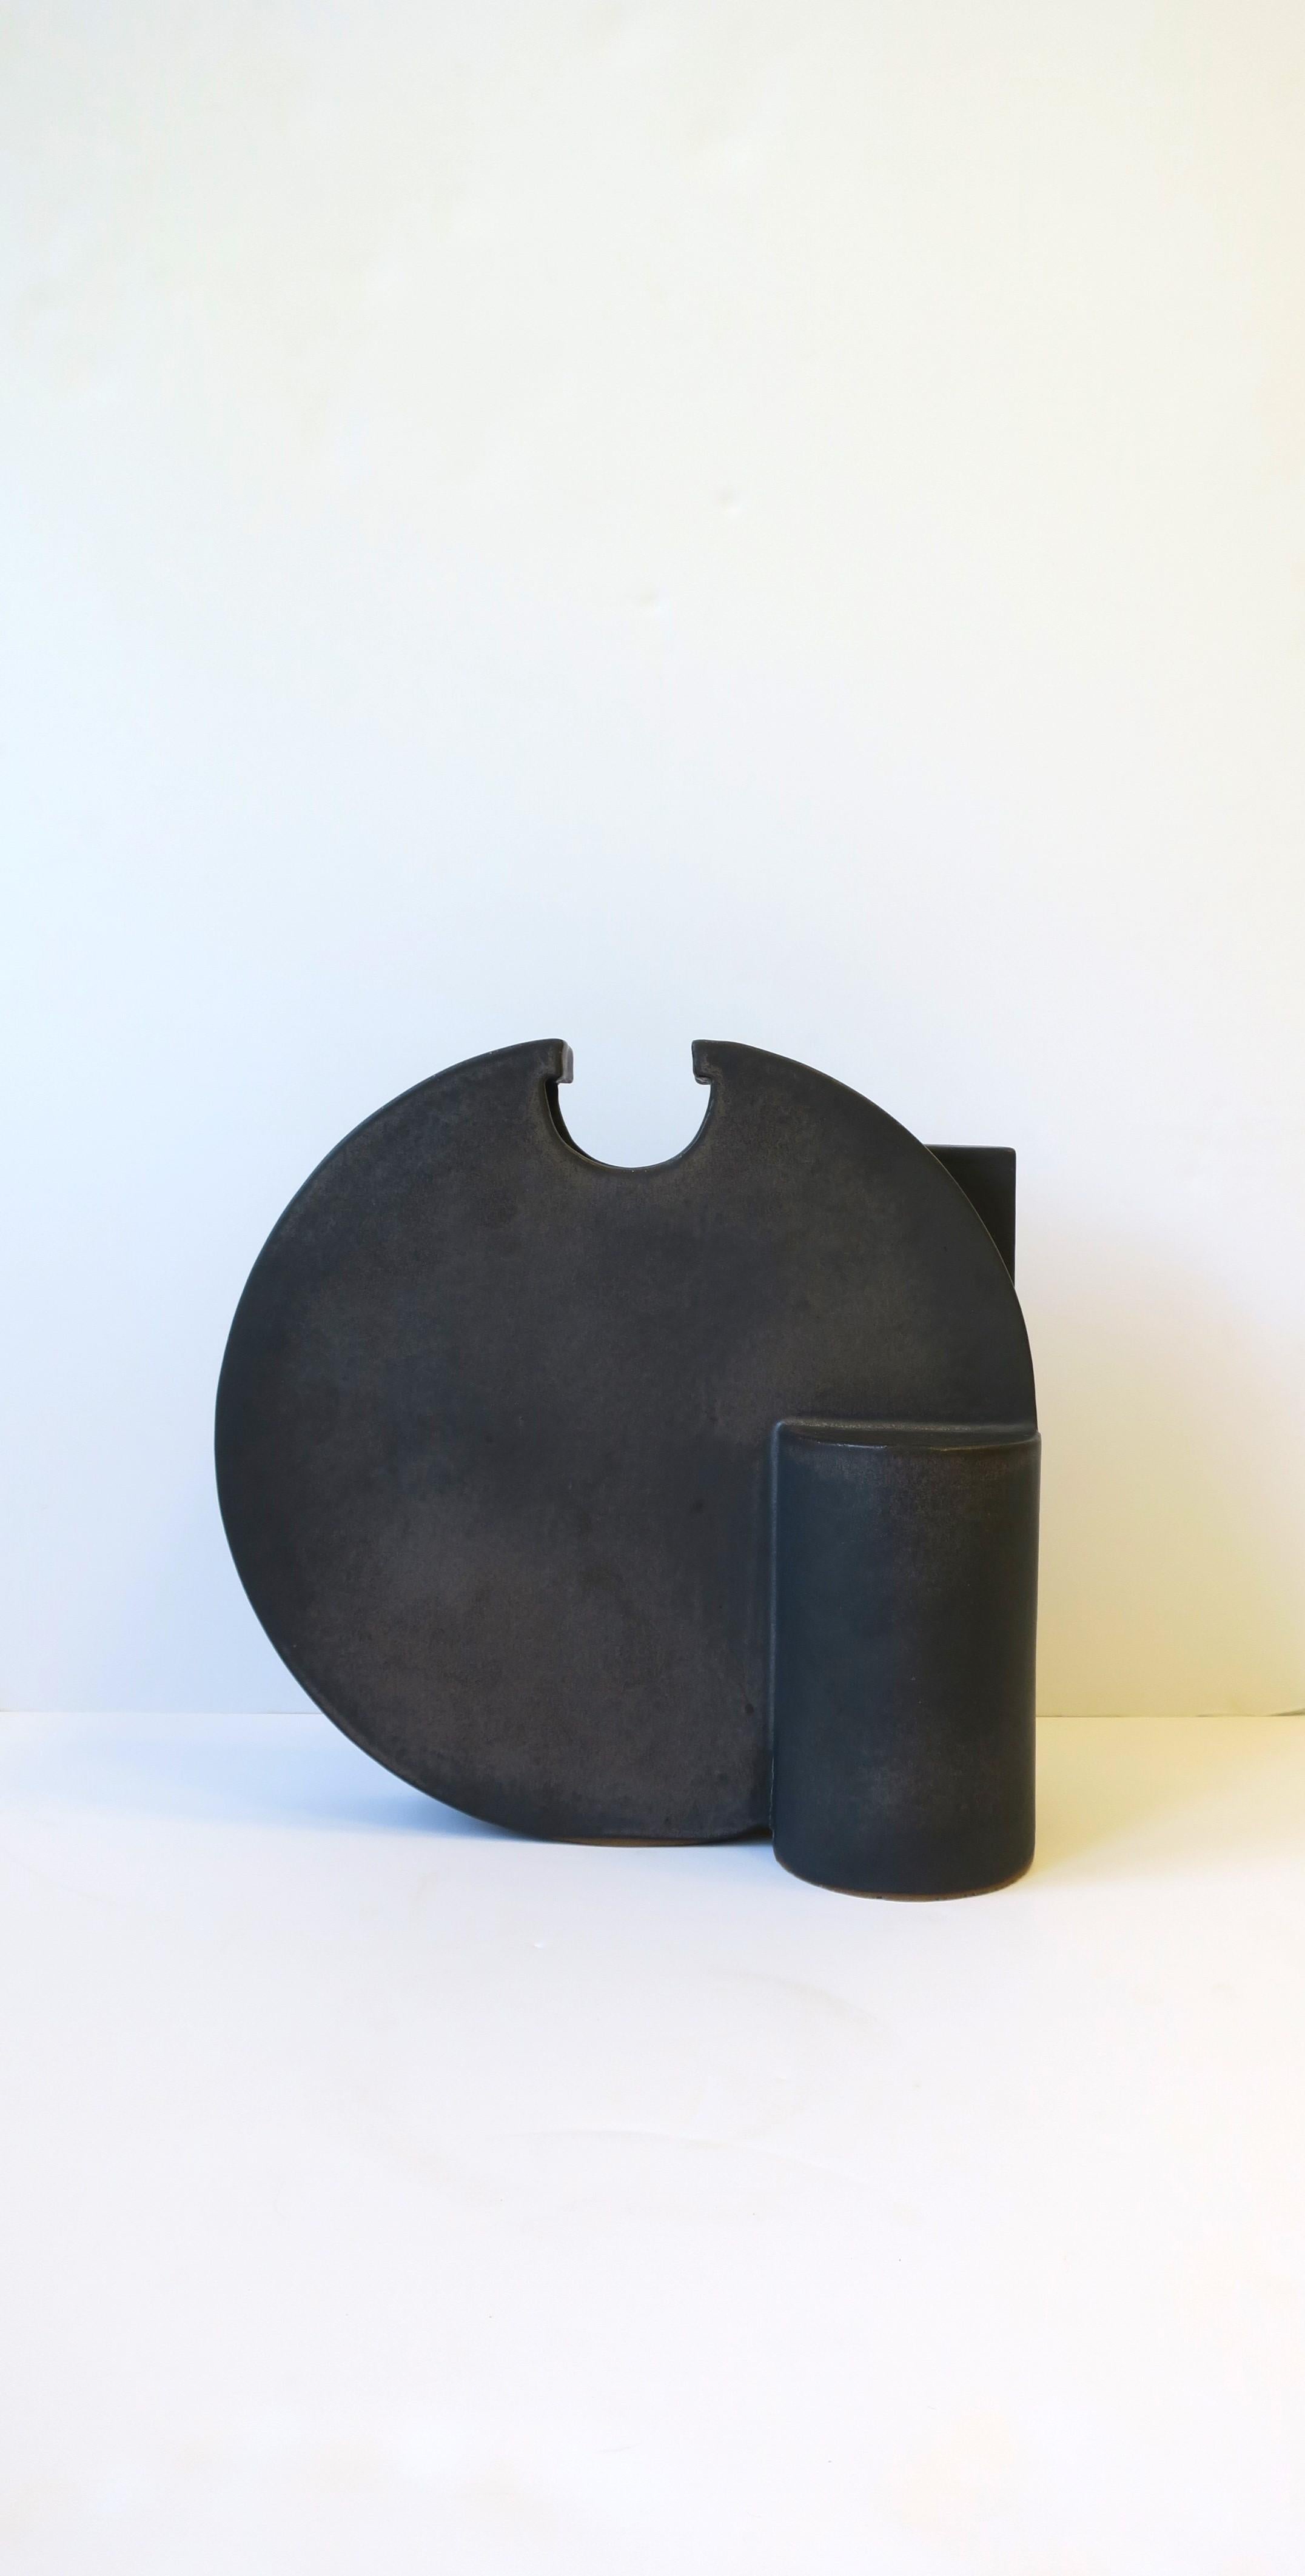 Magnifique vase sculpture postmoderne en charbon de bois noir, vers la fin du 20e siècle. La pièce est une poterie d'argile avec une finition mate noir charbon, avec un design rond, cylindrique et asymétrique. Marque des designers sur la face